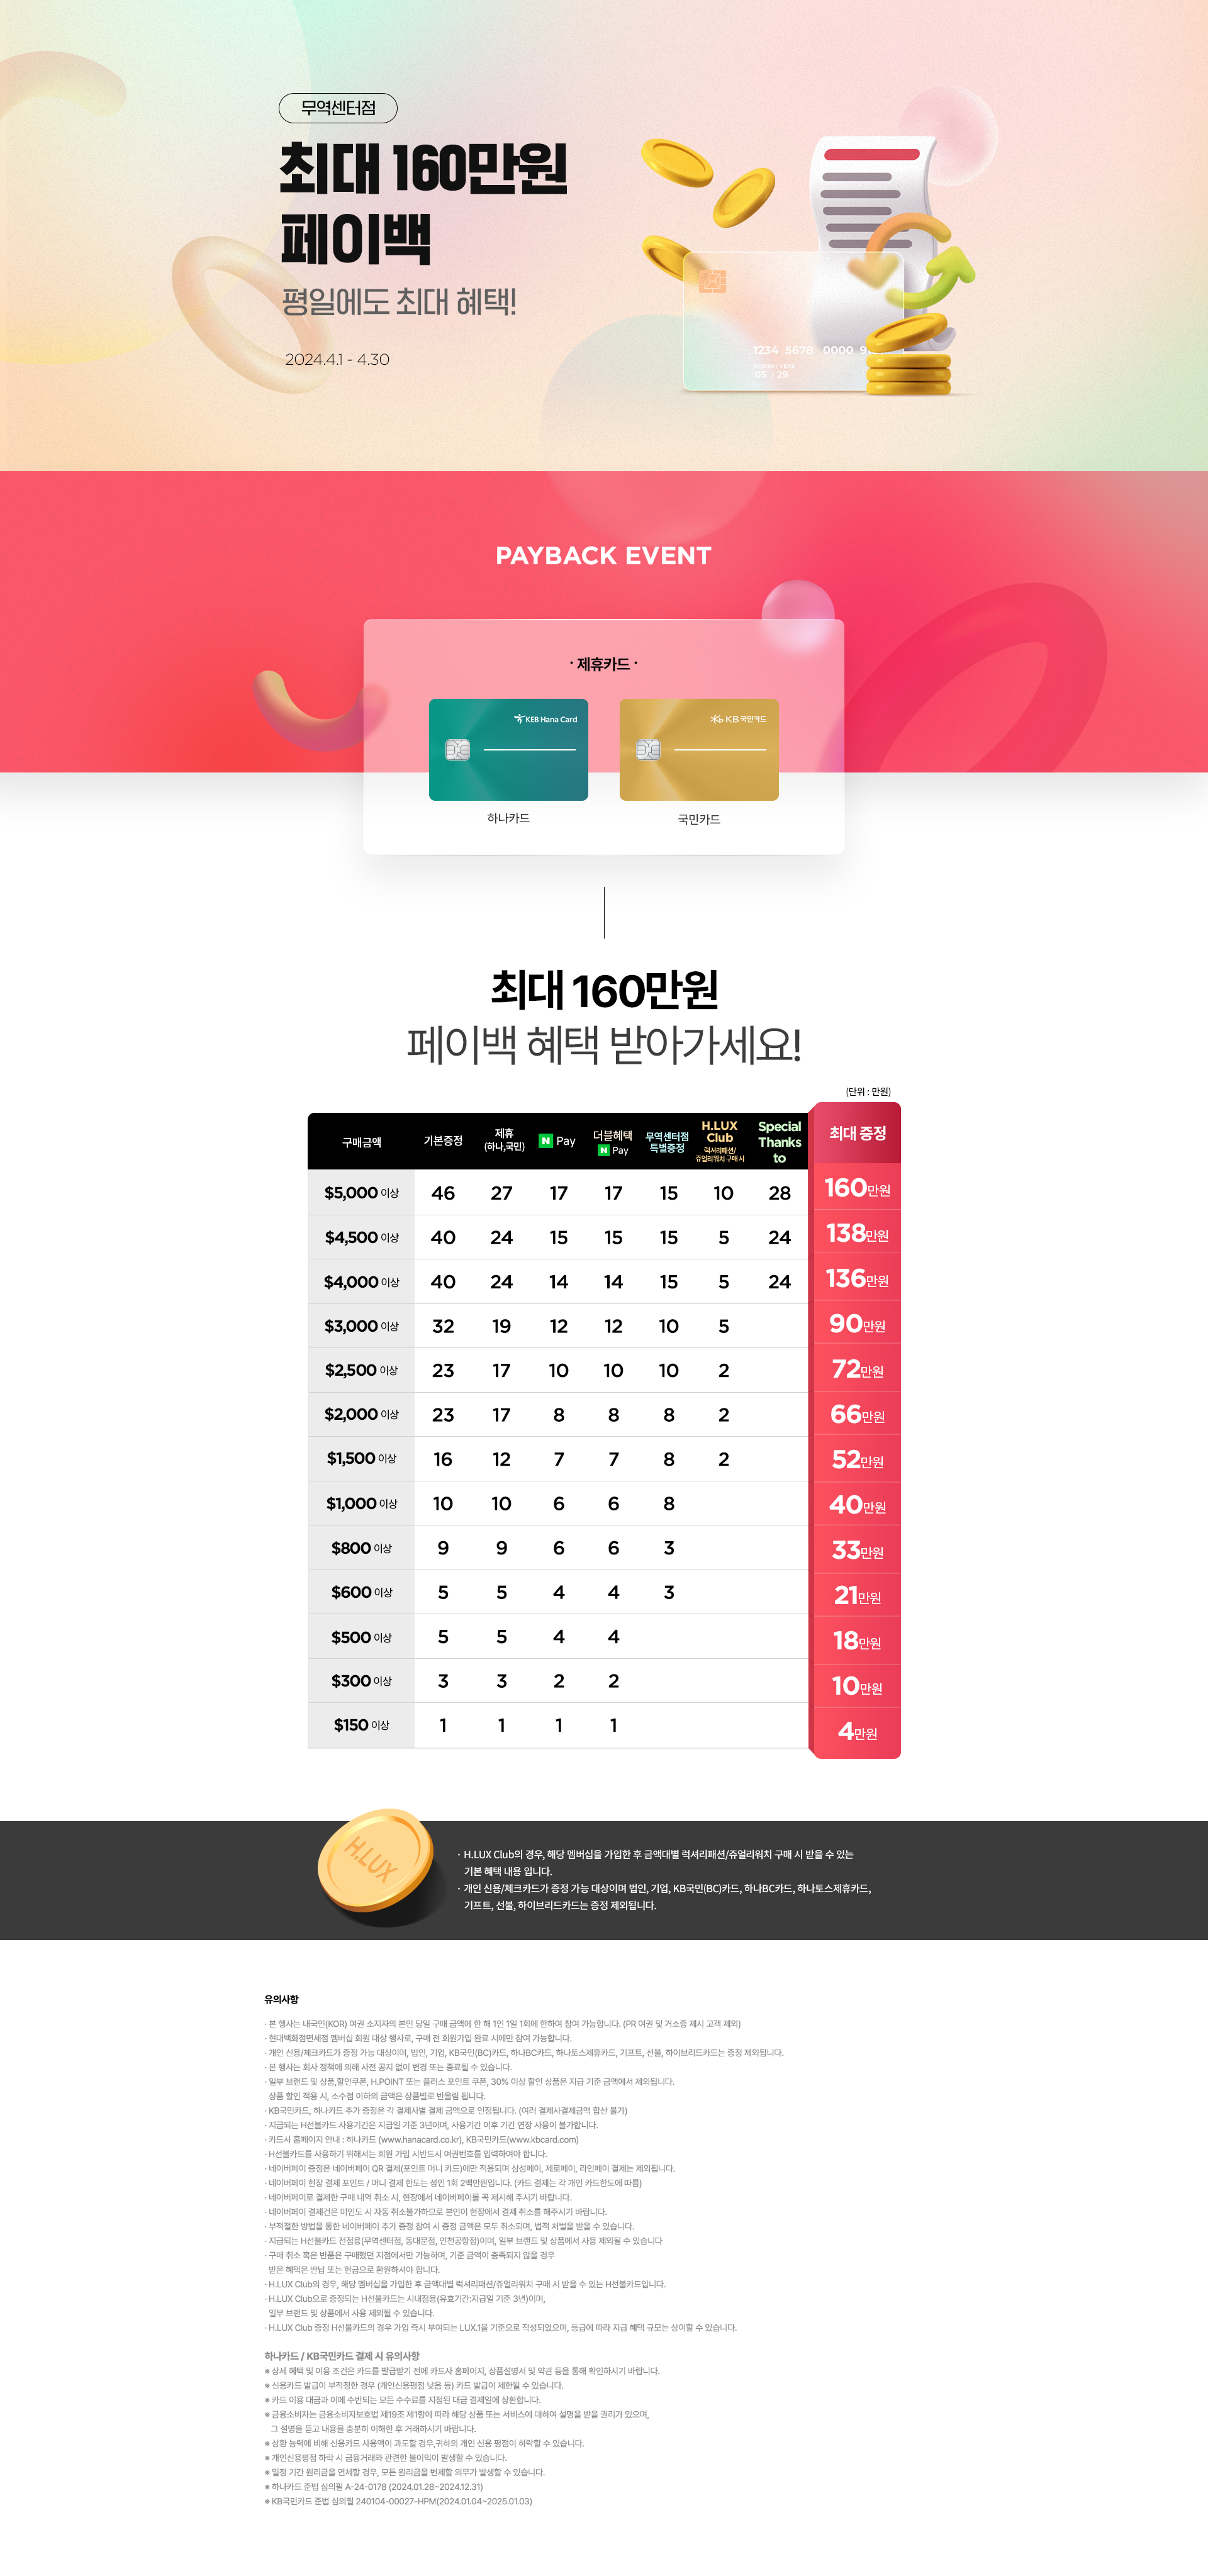 무역센터점 오프라인 페이백 행사(최대 160만원 페이백)